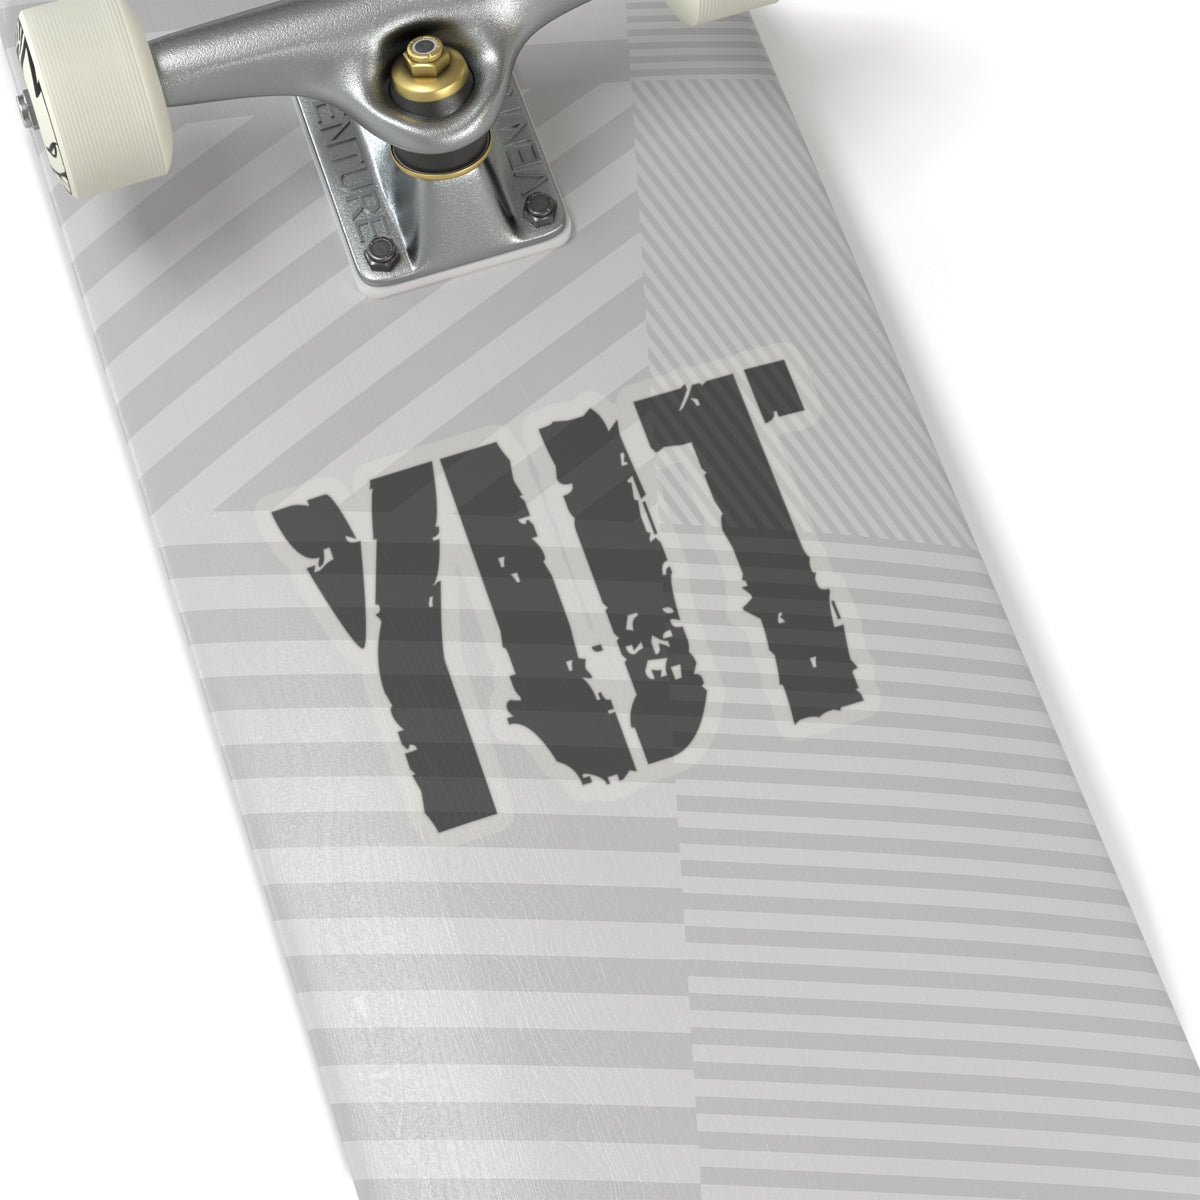 Yut - Kiss-Cut Stickers